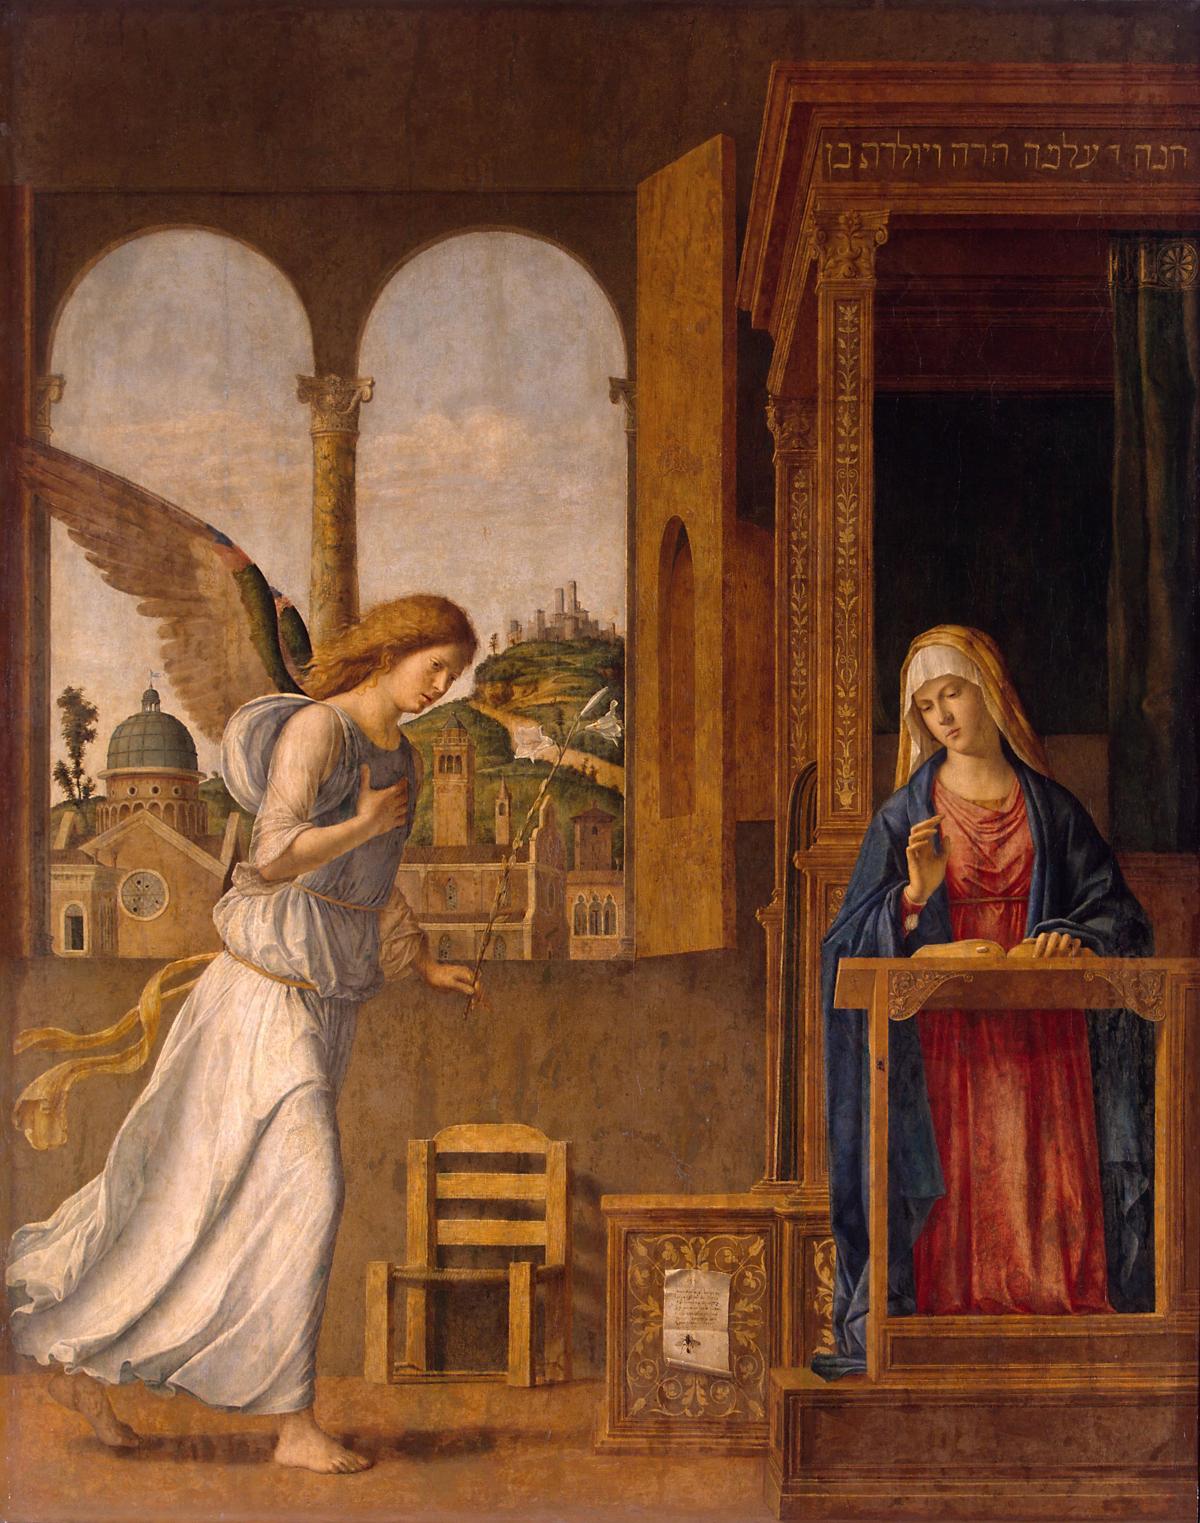 The Annunciation by Cima Da Conegliano